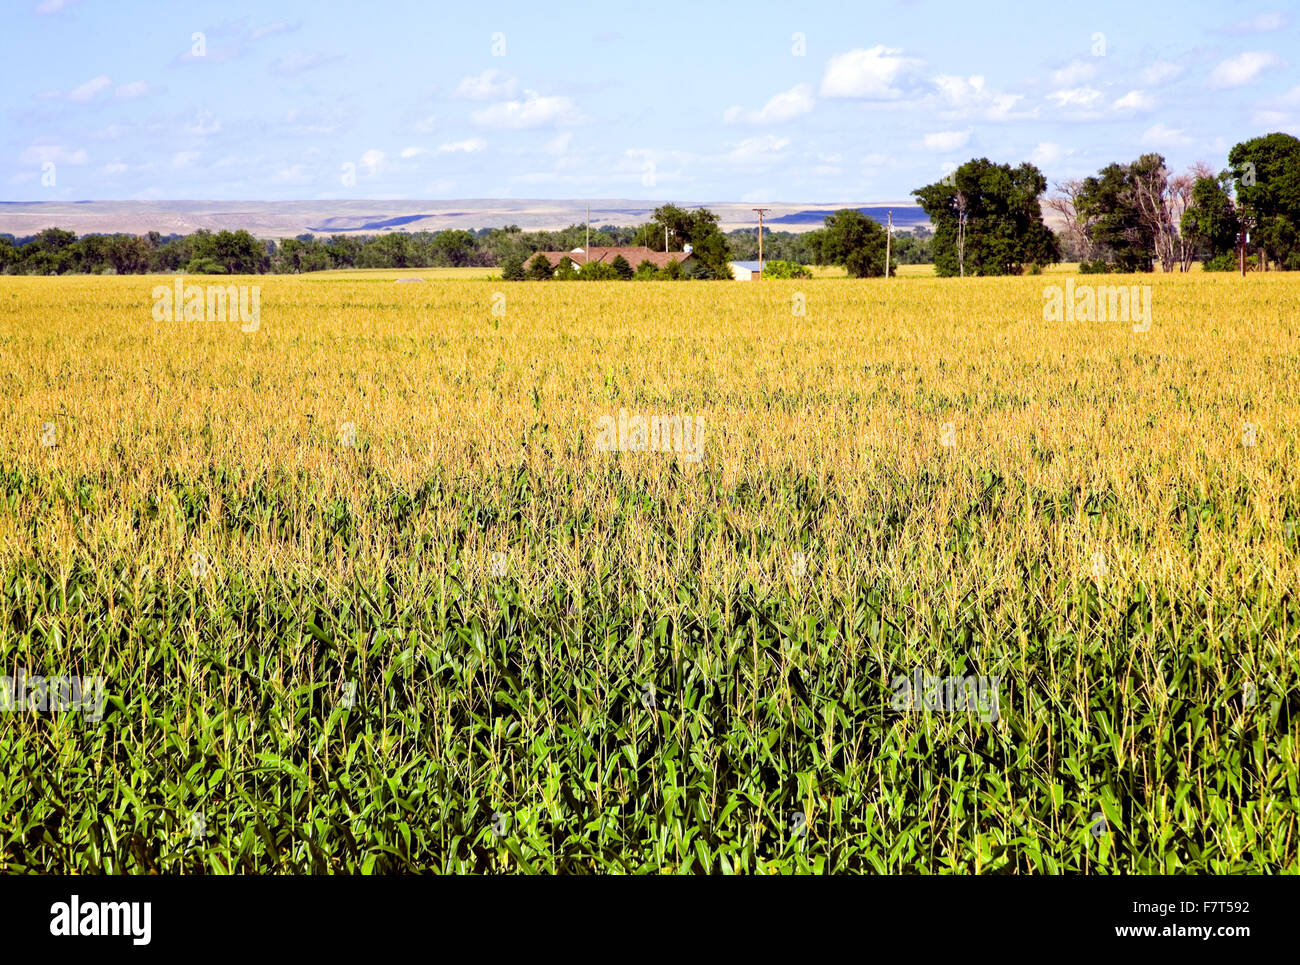 Le Nebraska est célèbre pour ses riches champs de maïs, une récolte très apprécié parce que c'est la base de l'éthanol. Banque D'Images